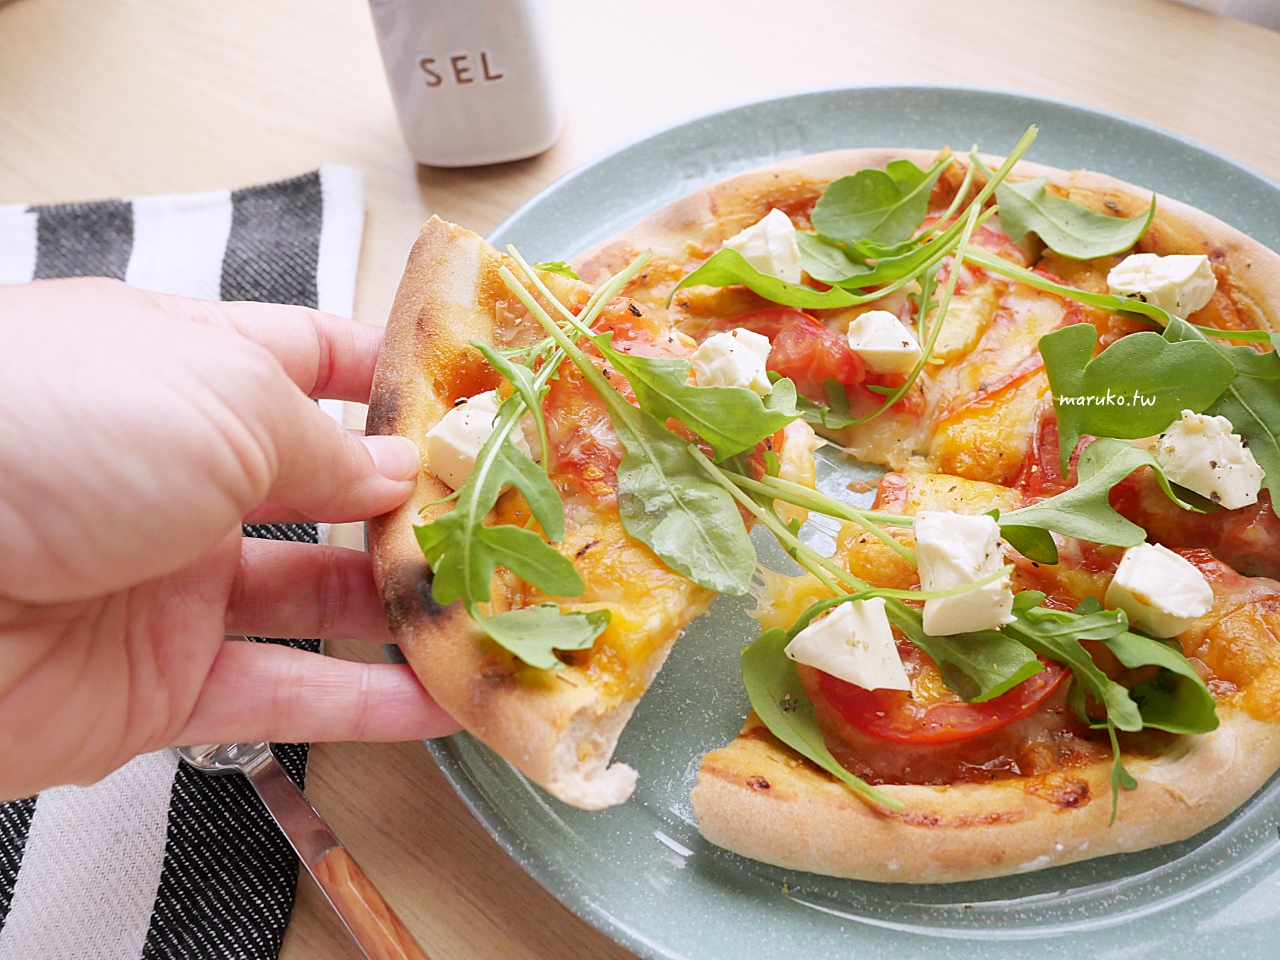 【食譜】三種起司披薩 拿坡里軟式披薩餅皮做法分享